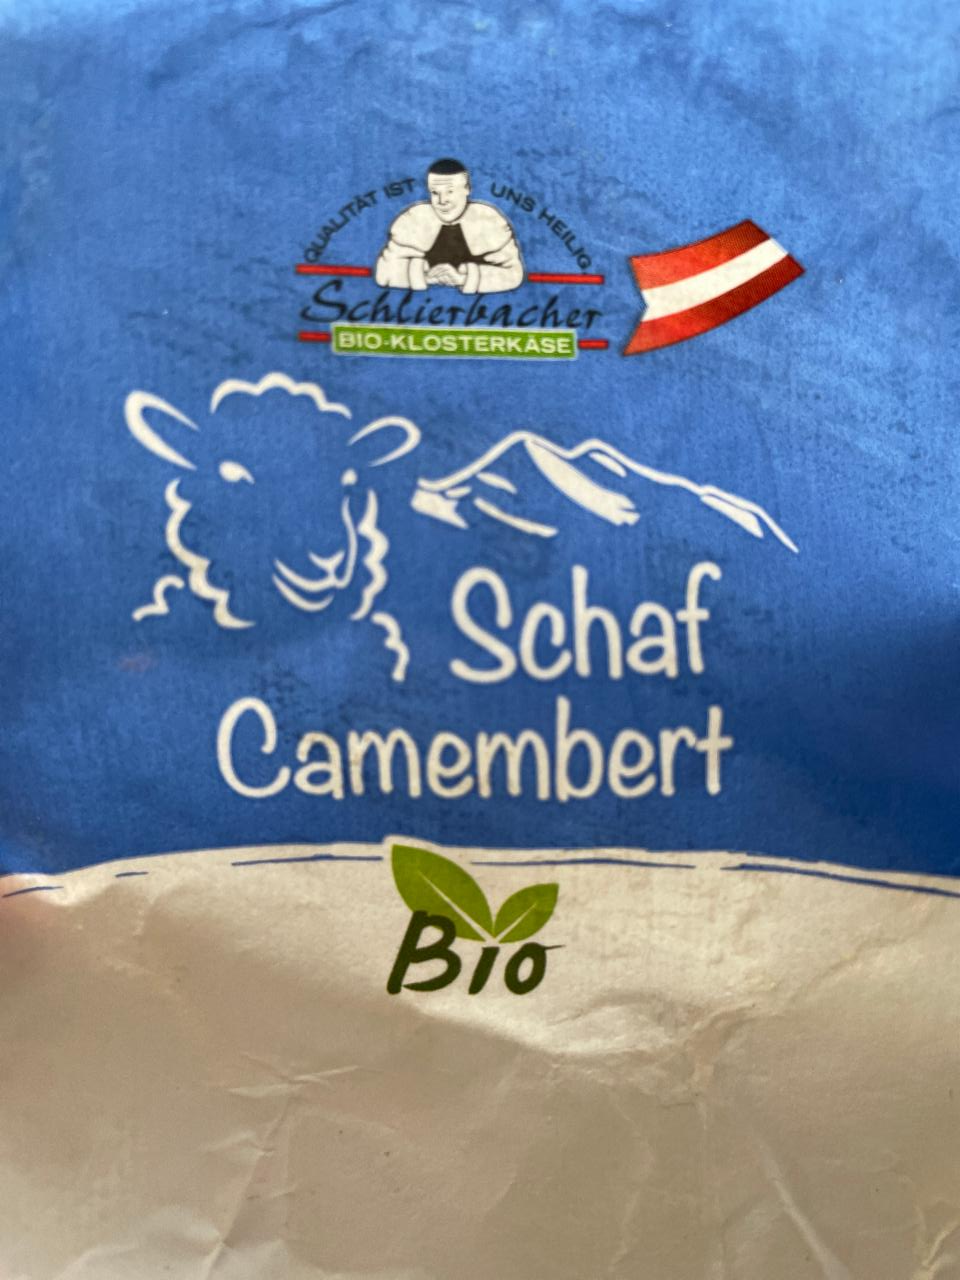 Fotografie - Camembert z ovčieho mlieka Schlierbacher